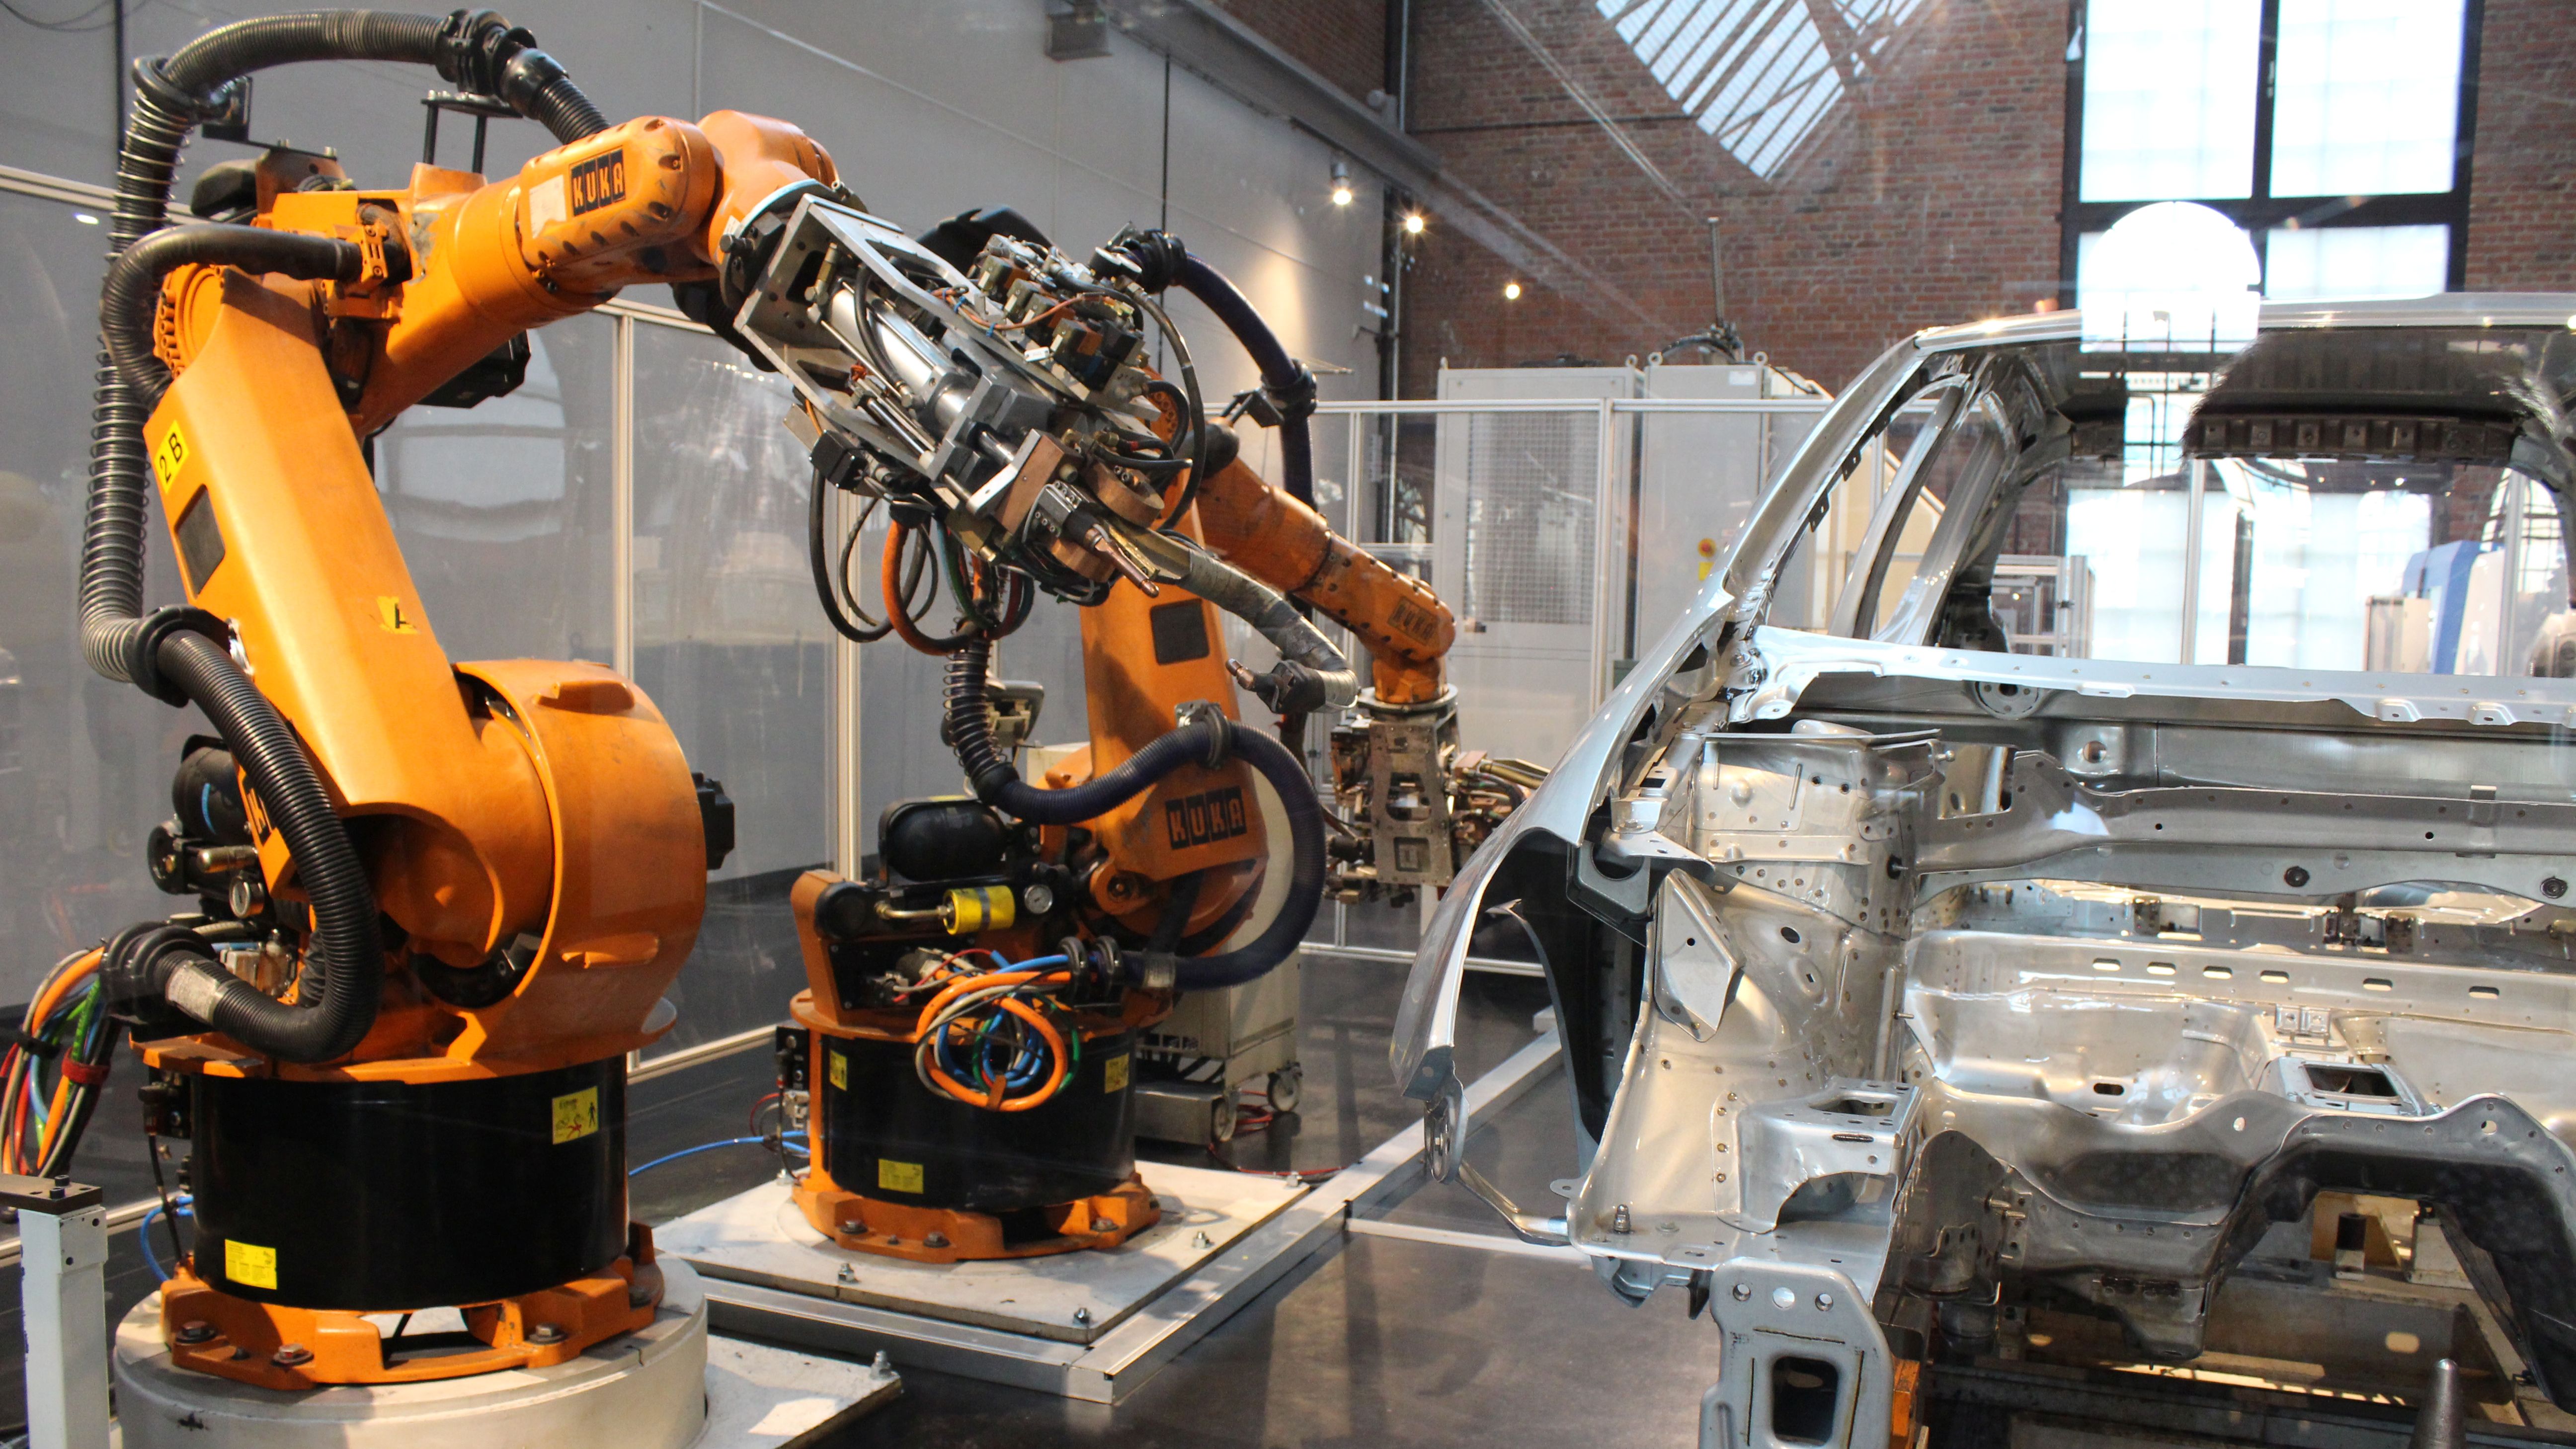 Ausstellungsbereich 'Schauen und Staunen': links im Bild ist ein Industrieroboter zu sehen, rechts eine Karosserieschweißanlage